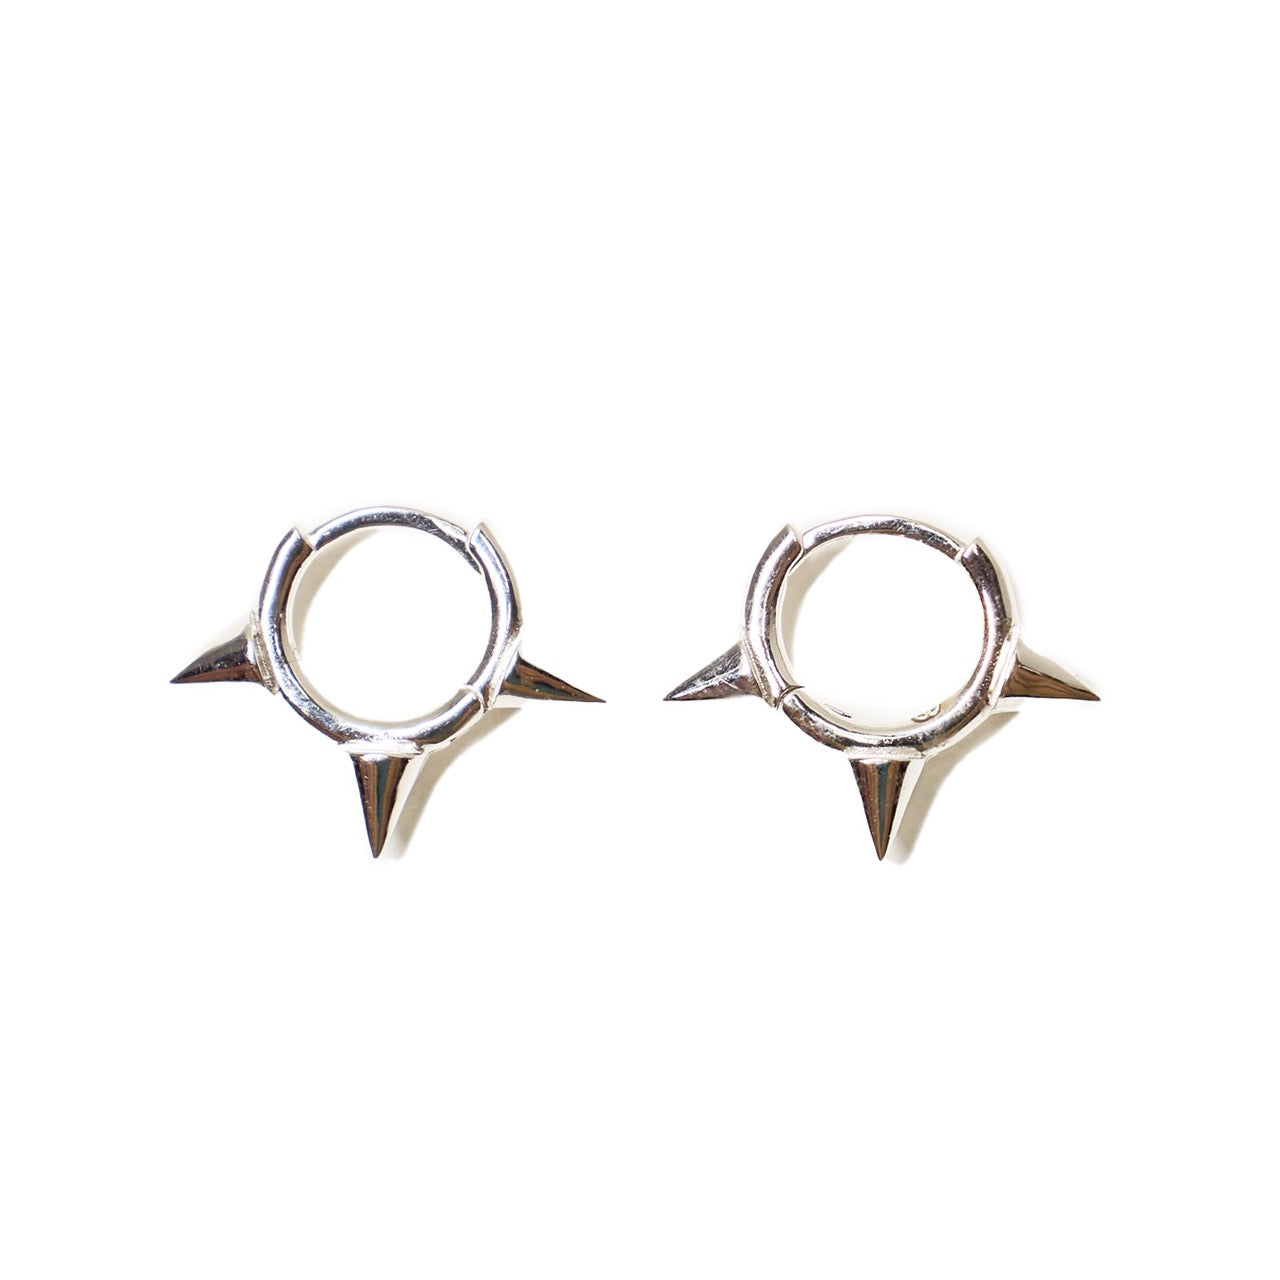 Trippple Spike Earrings in Sterling Silver